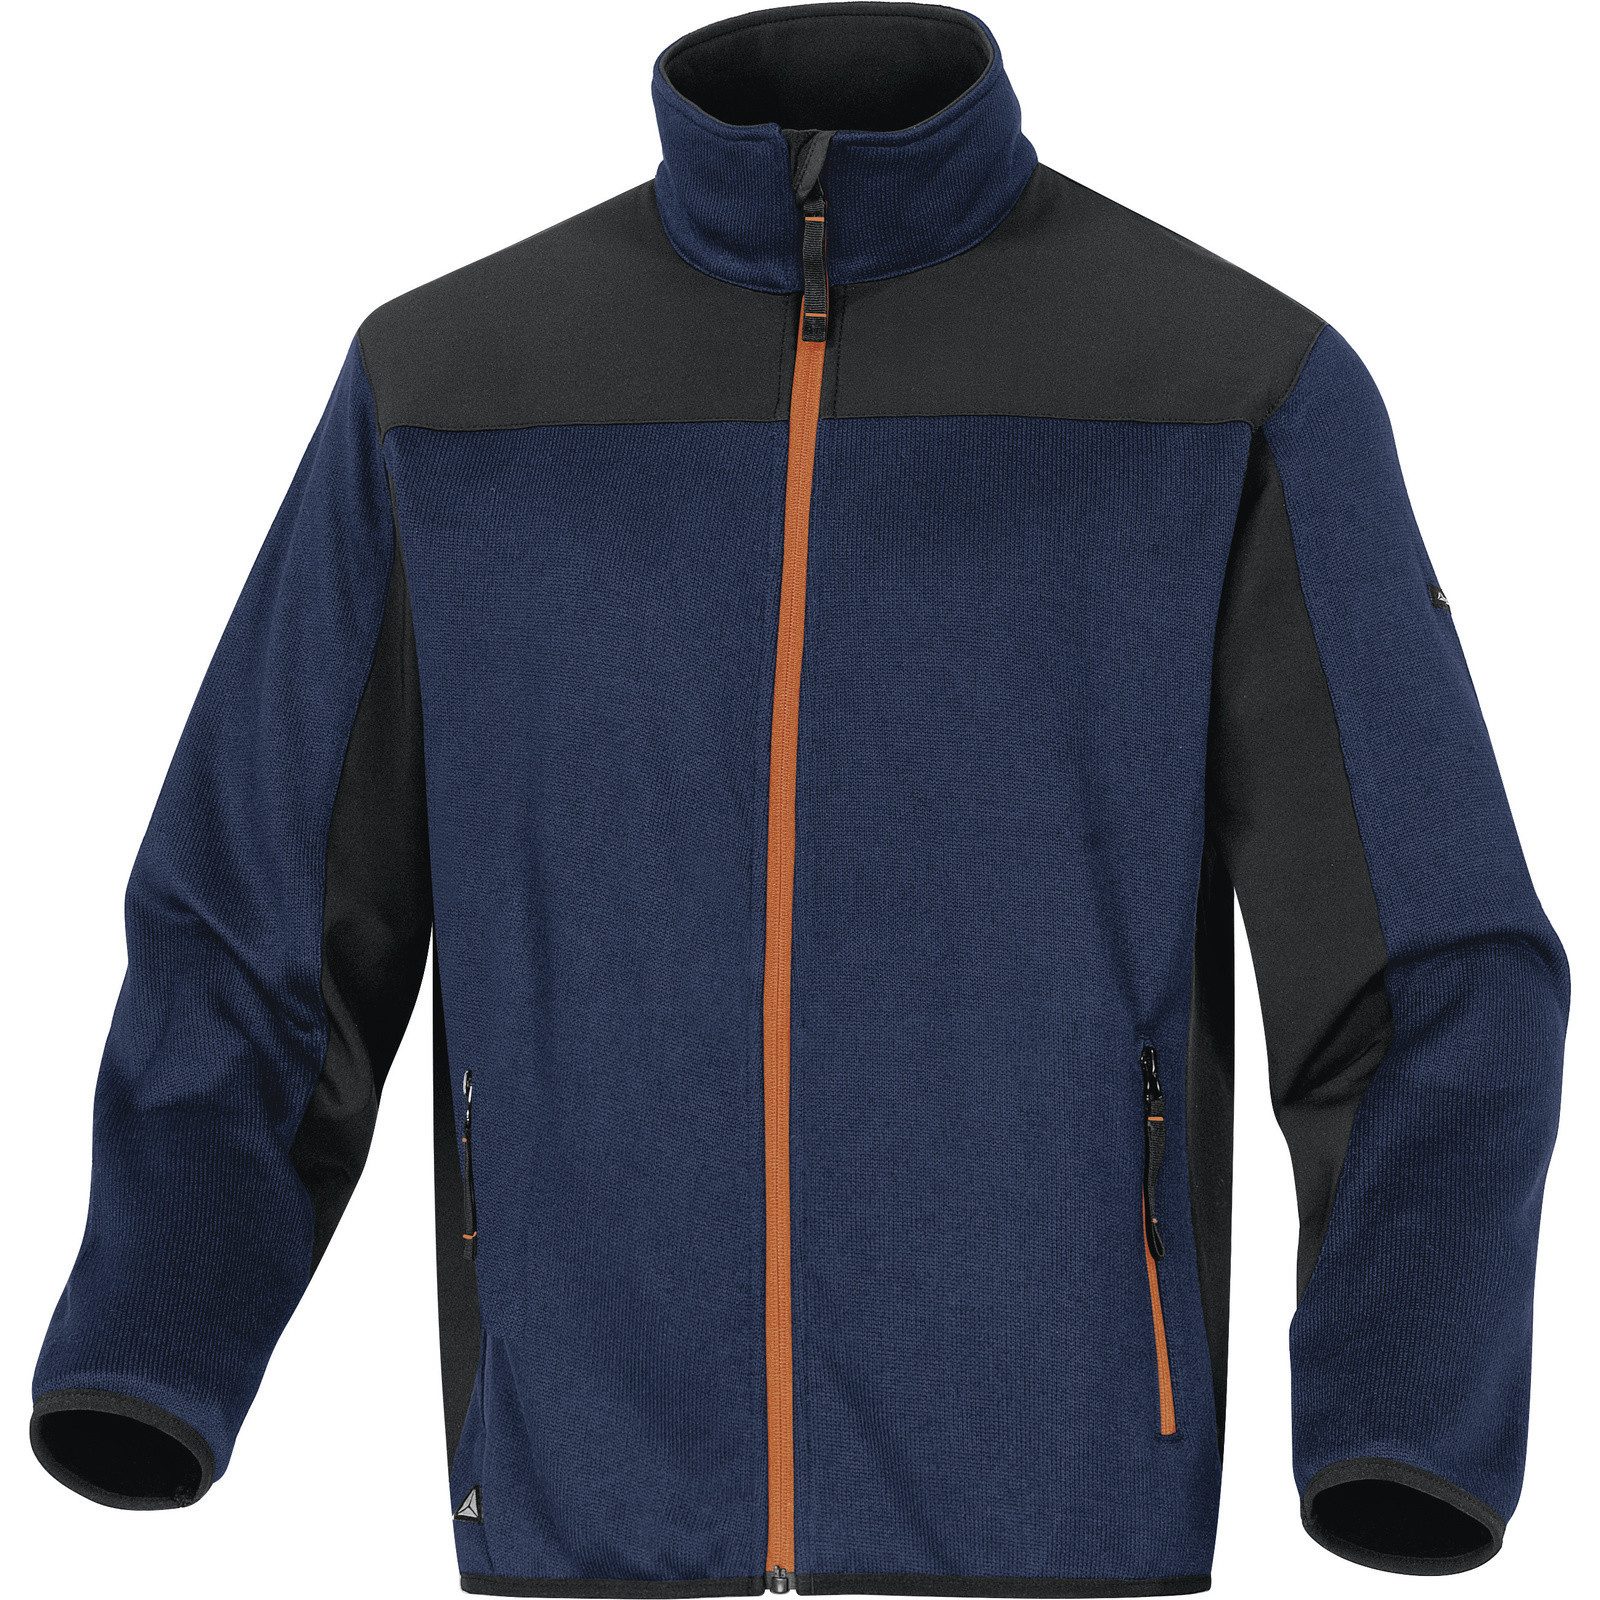 Softshellovo-pleteninová bunda Delta Plus Beaver - veľkosť: S, farba: nám. modrá/oranžová